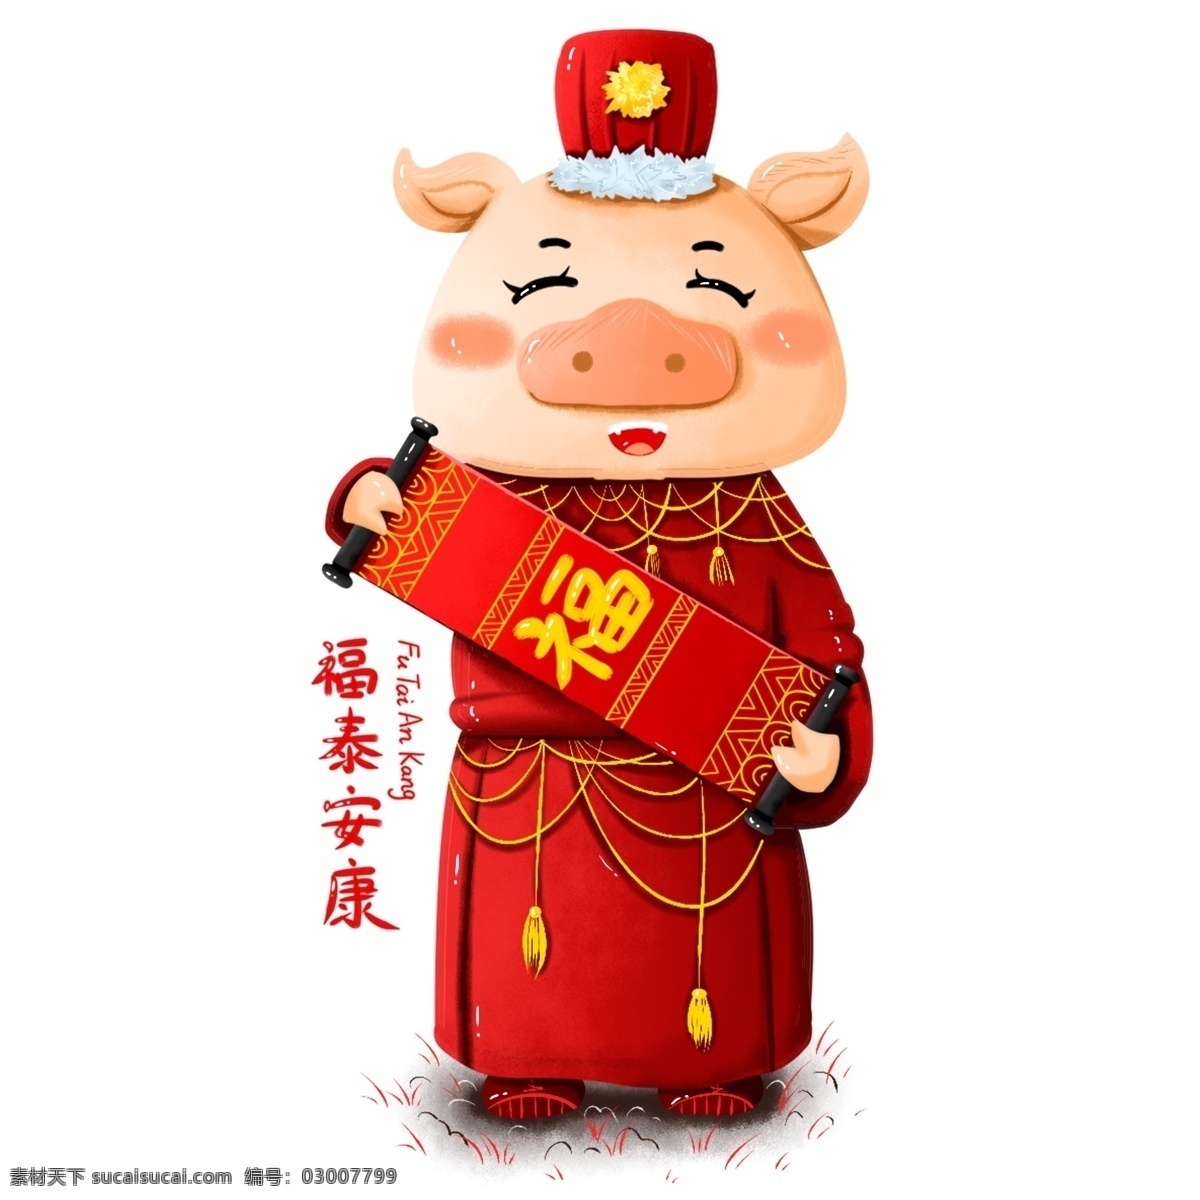 原创 手绘 新年 2019 猪 形象 福 泰安 康 元素 春节 海报素材 猪元素 猪形象 福泰安康